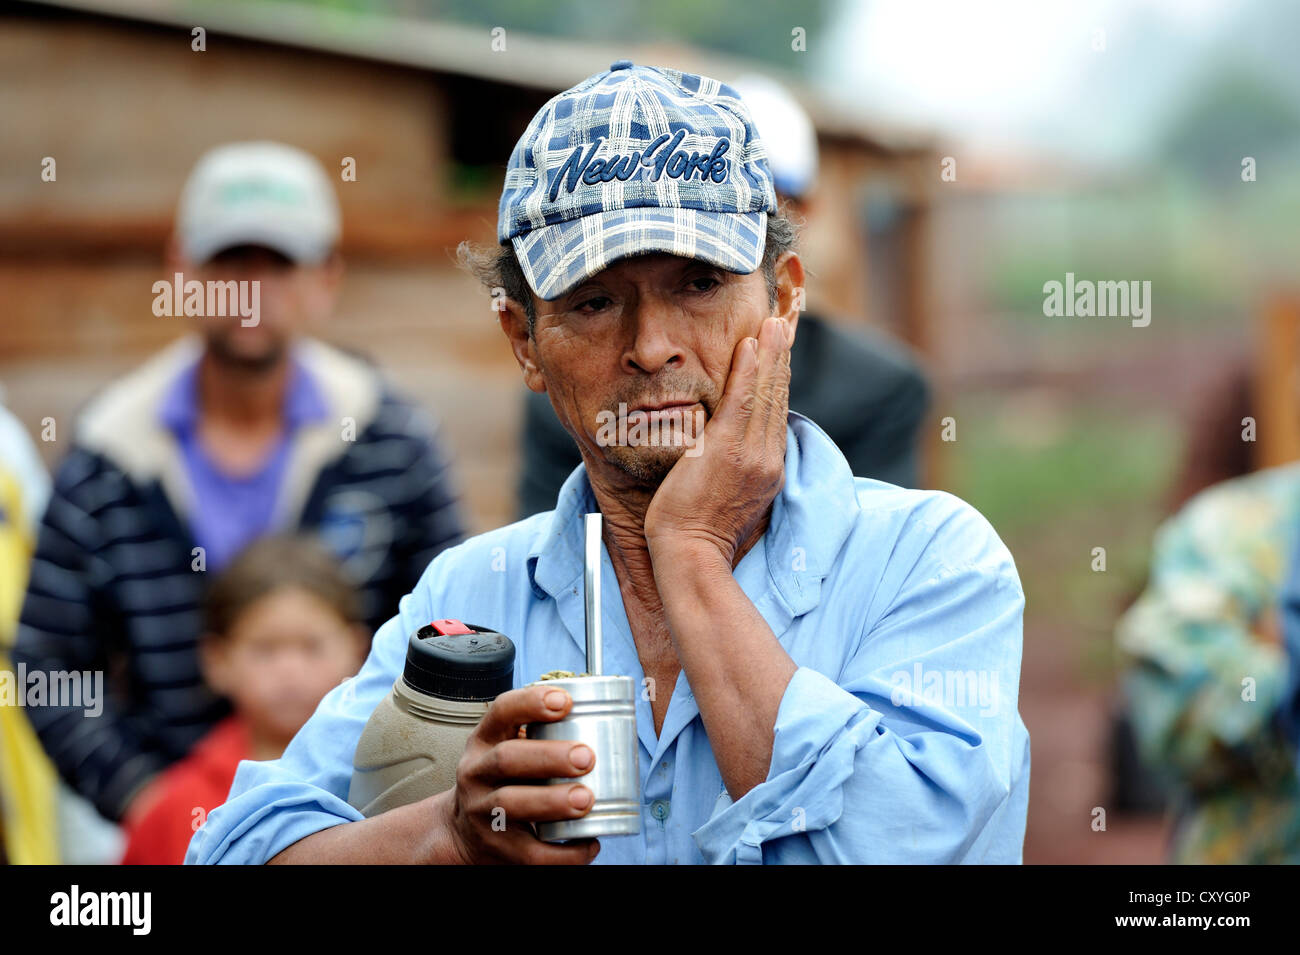 Agriculteur avec une expression inquiète c'est boire la boisson nationale paraguayenne 'Terere" fait de mate, il a été expulsé de sa terre Banque D'Images